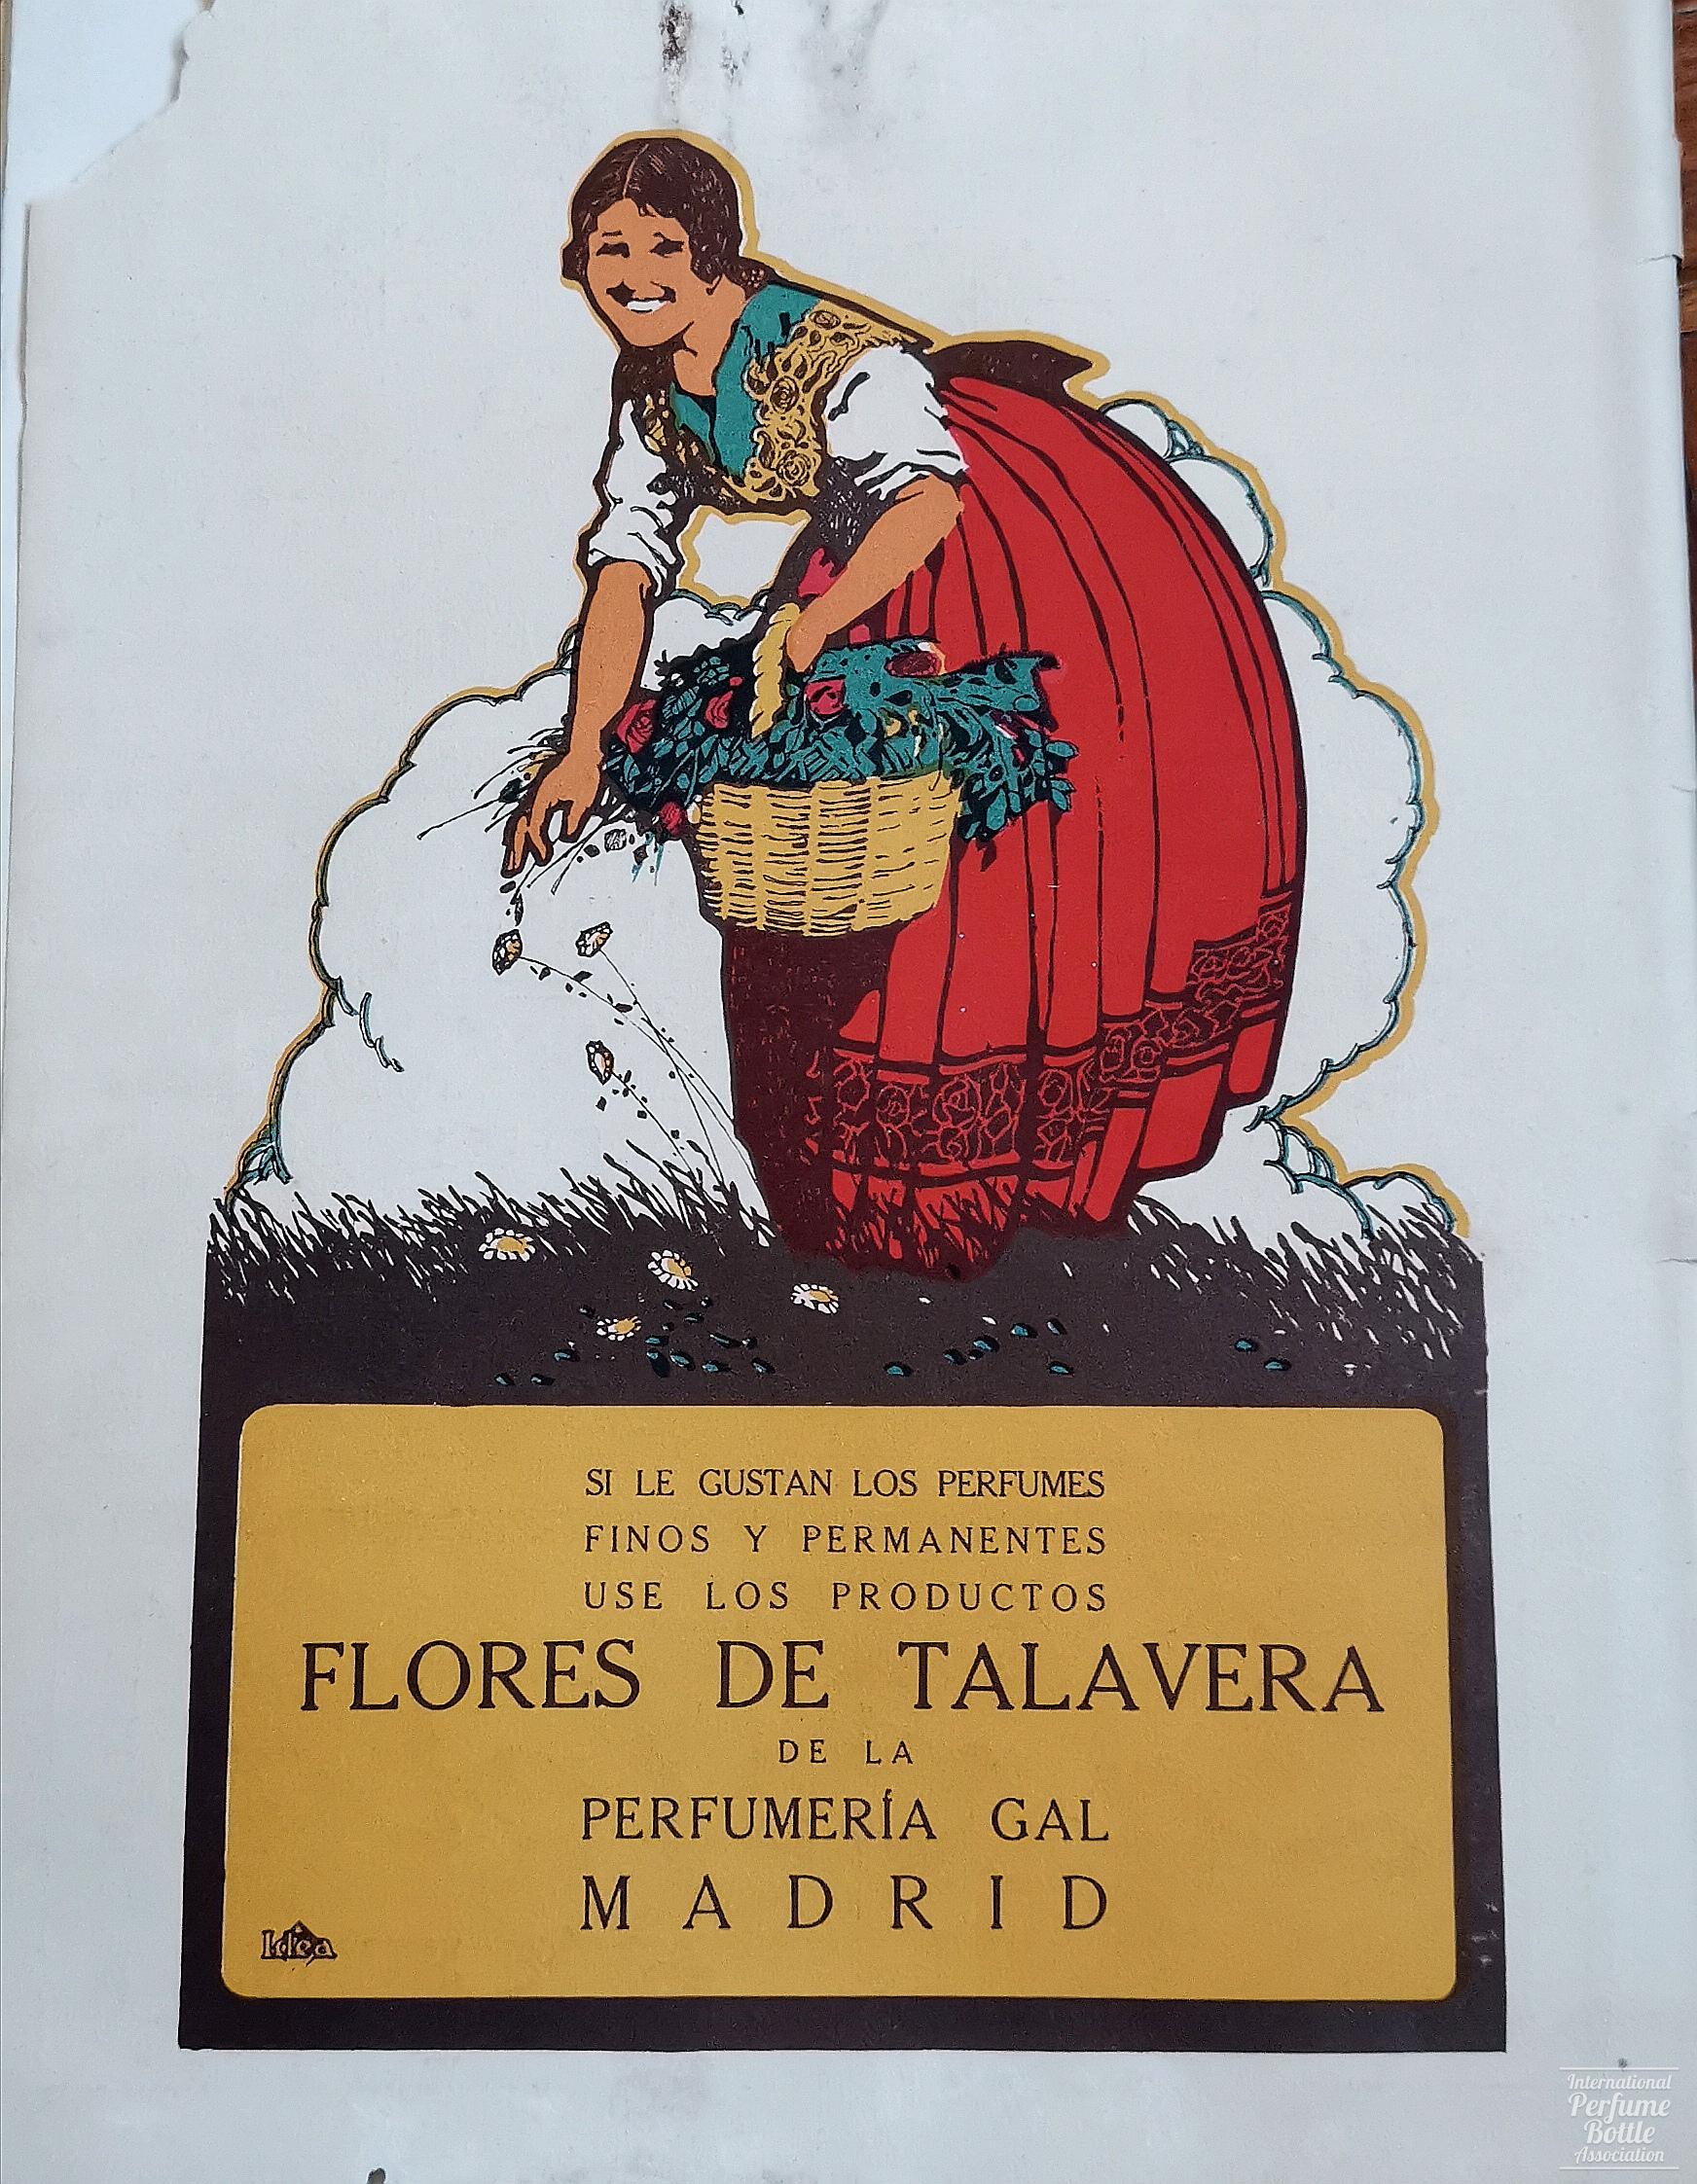 "Flores de Talavera" by Perfumería GAL Advertisement - 1919